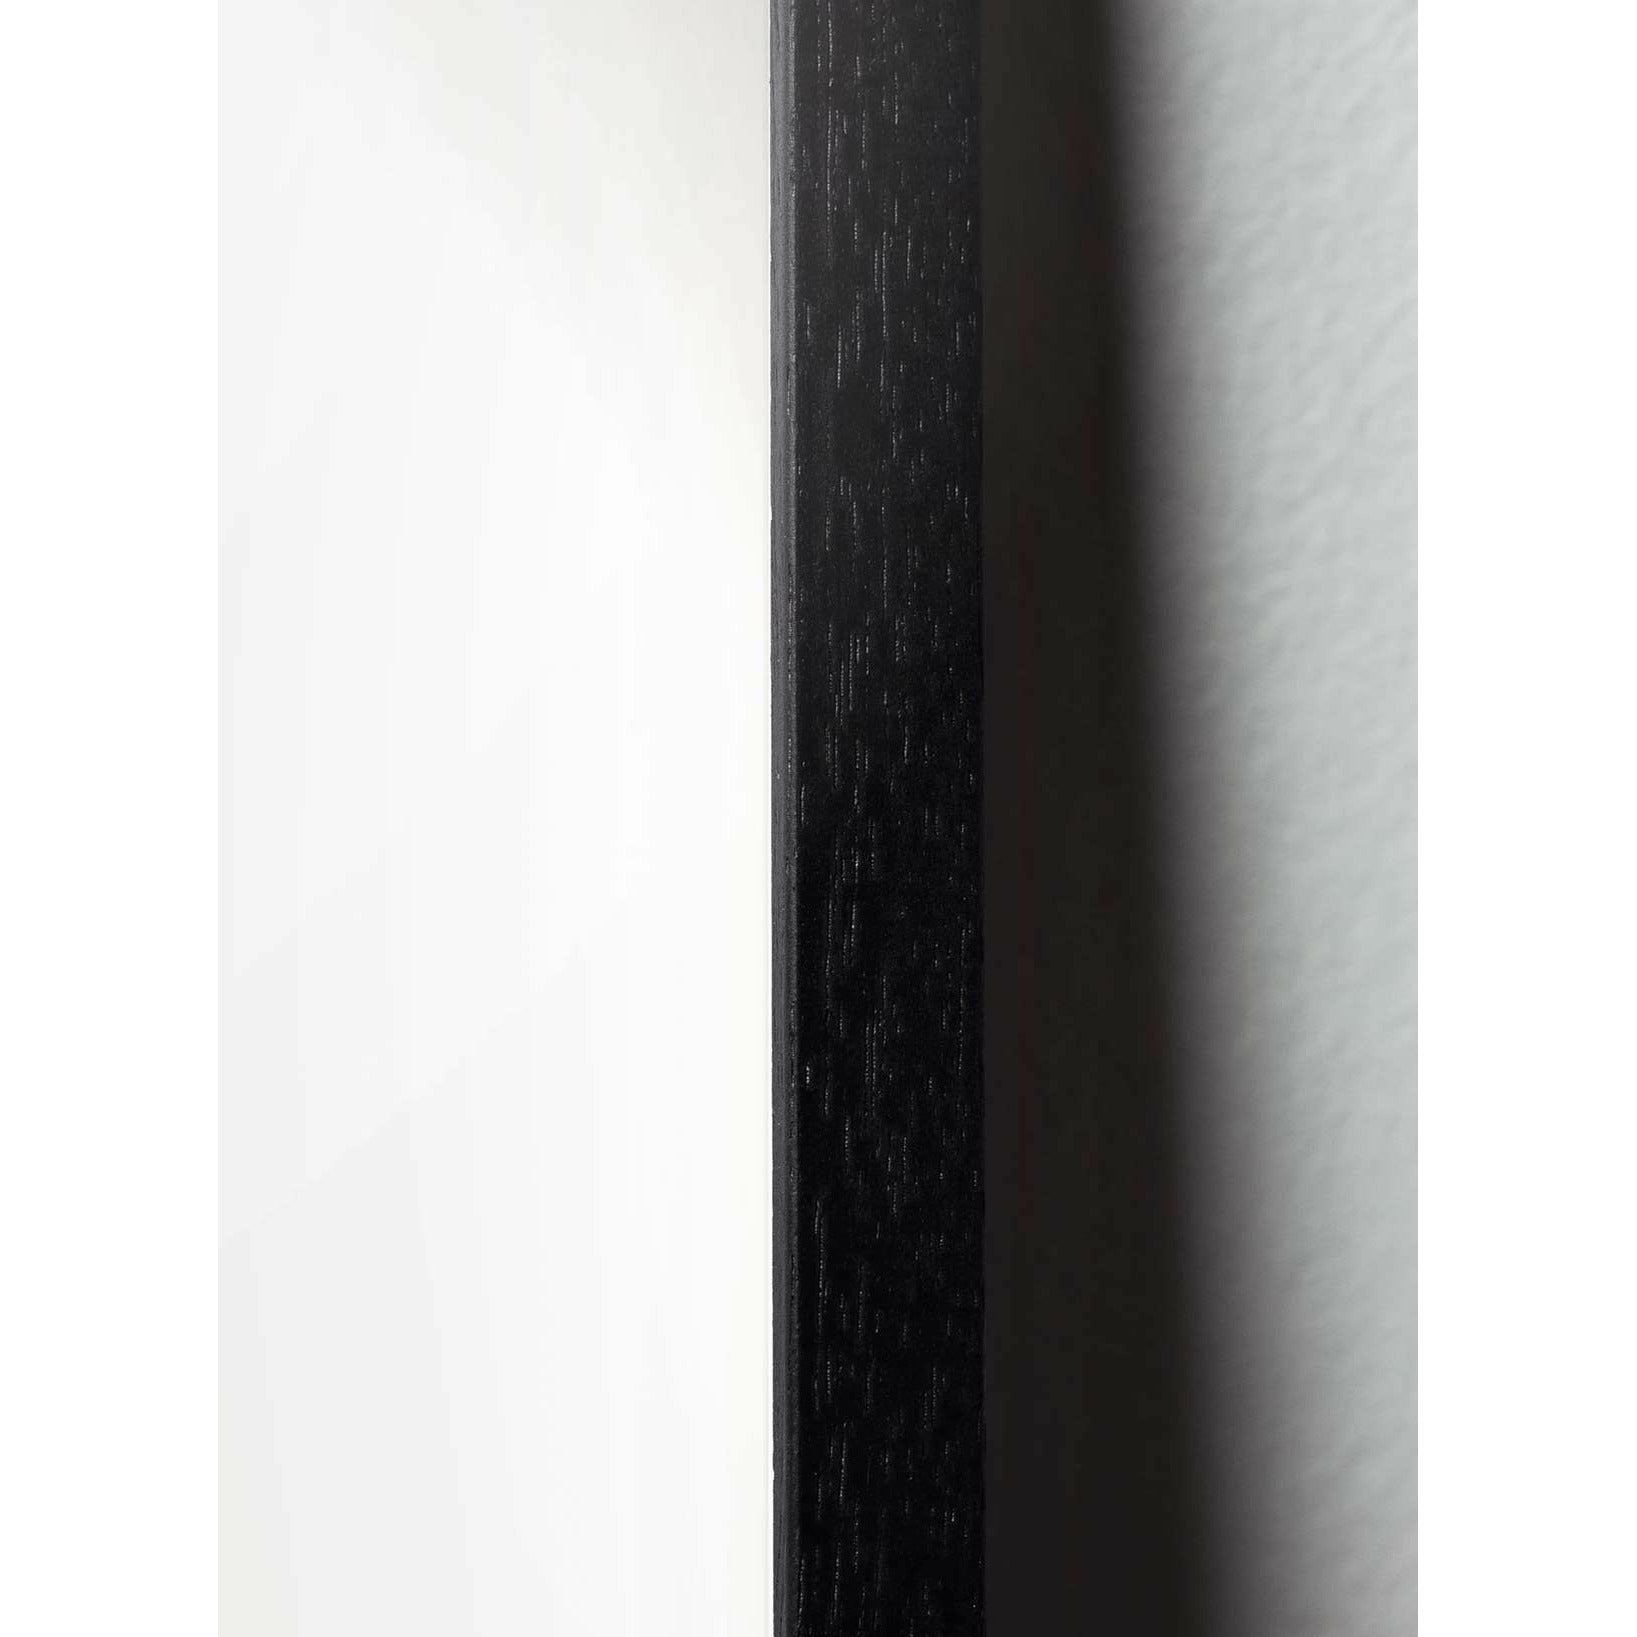 brainchild Munakuvioiden juliste, mustasta lakatusta puusta valmistettu runko 30x40 cm, ruskea